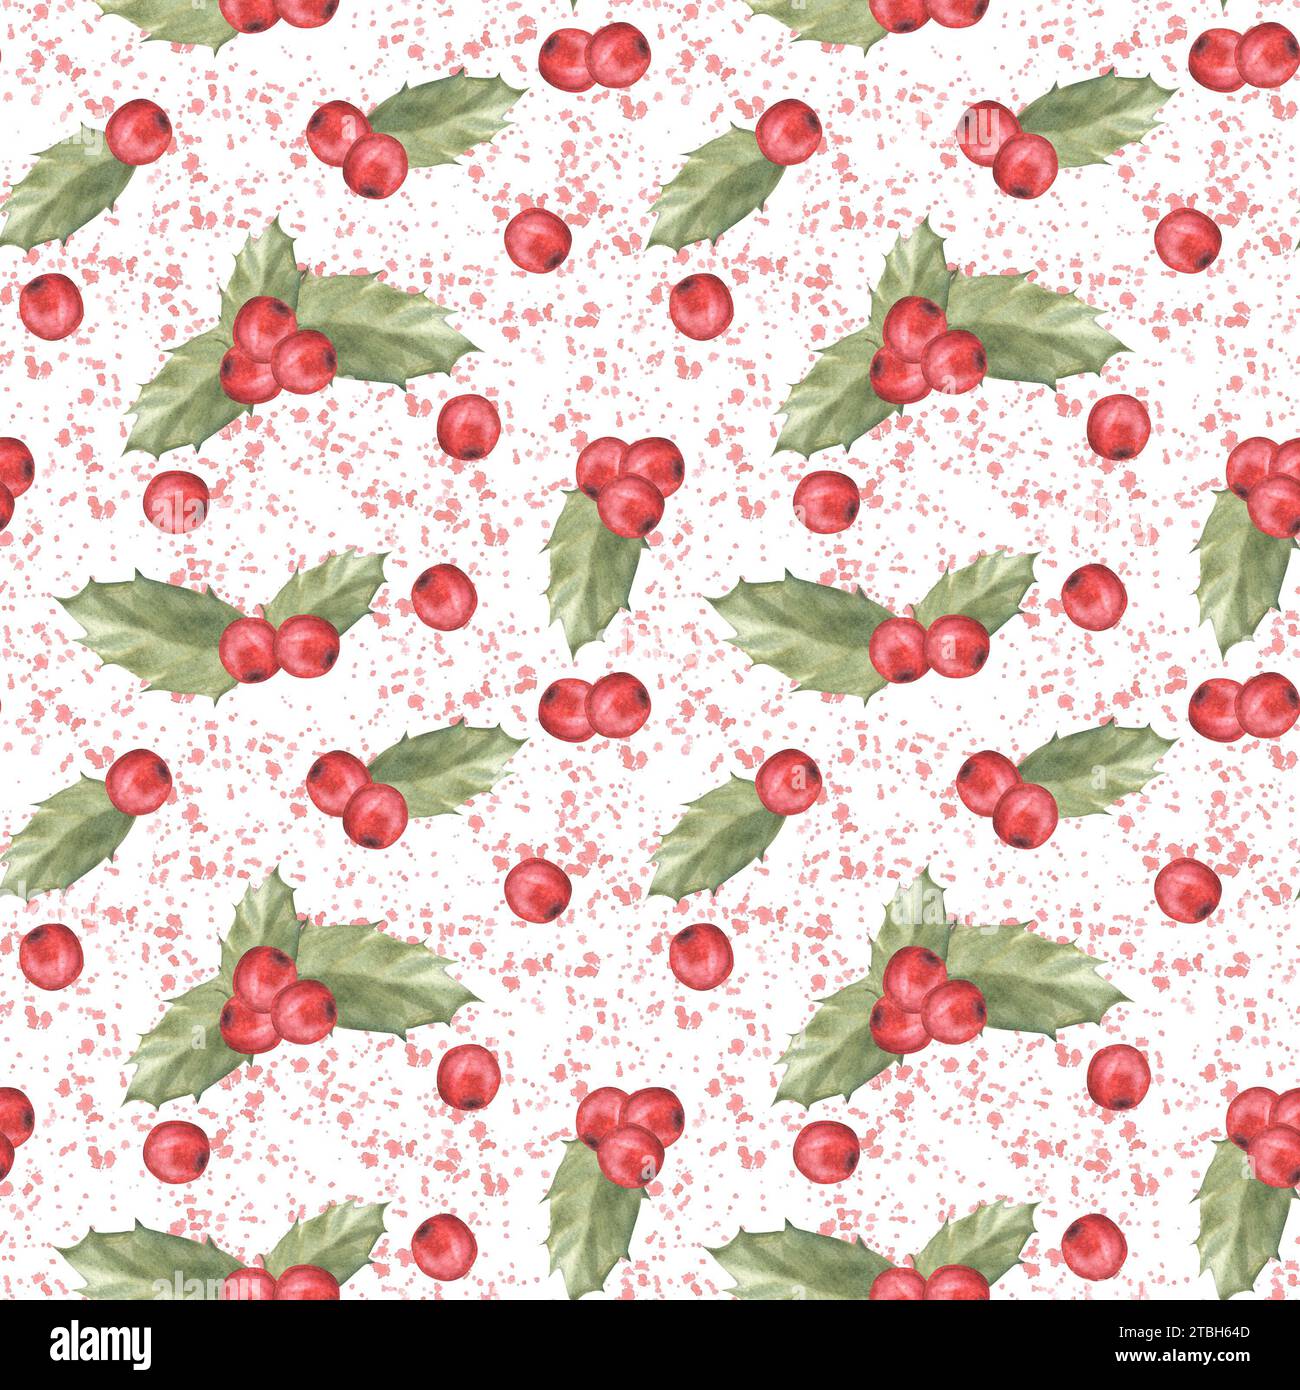 Aquarellgemalte Illustration von roten stechpalmenblättern und Beeren mit Spritzern. Nahtloses Muster. Clipart für Weihnachten oder Silvester Dekor, Geschenk Stockfoto